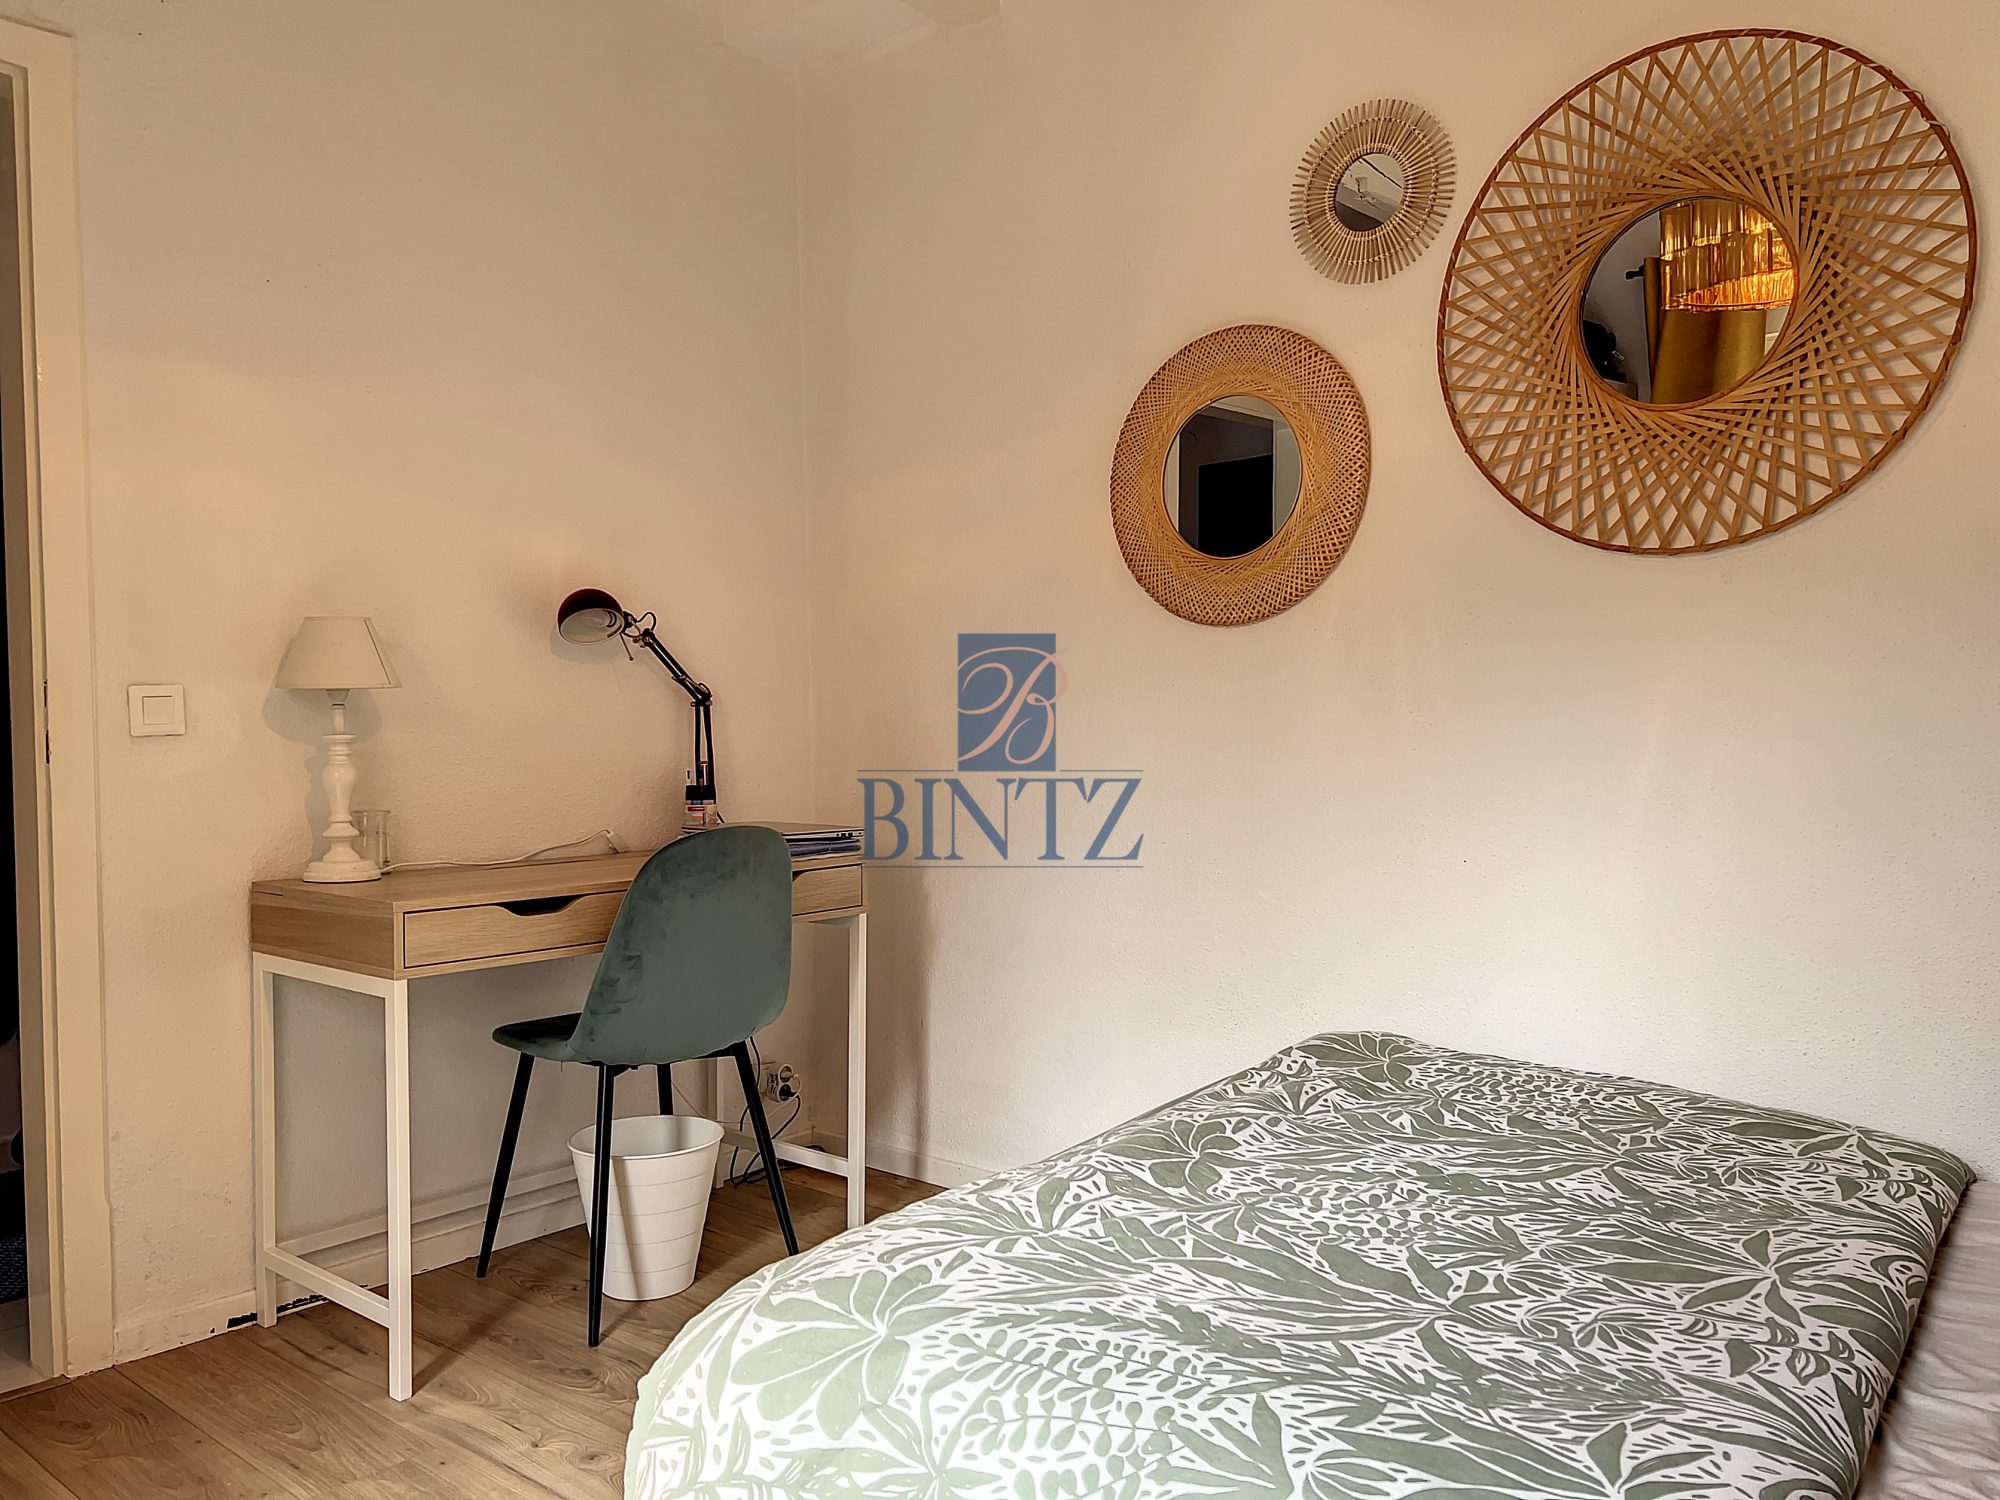 3P meuble rue de zurich - location appartement Strasbourg - Bintz Immobilier - 8